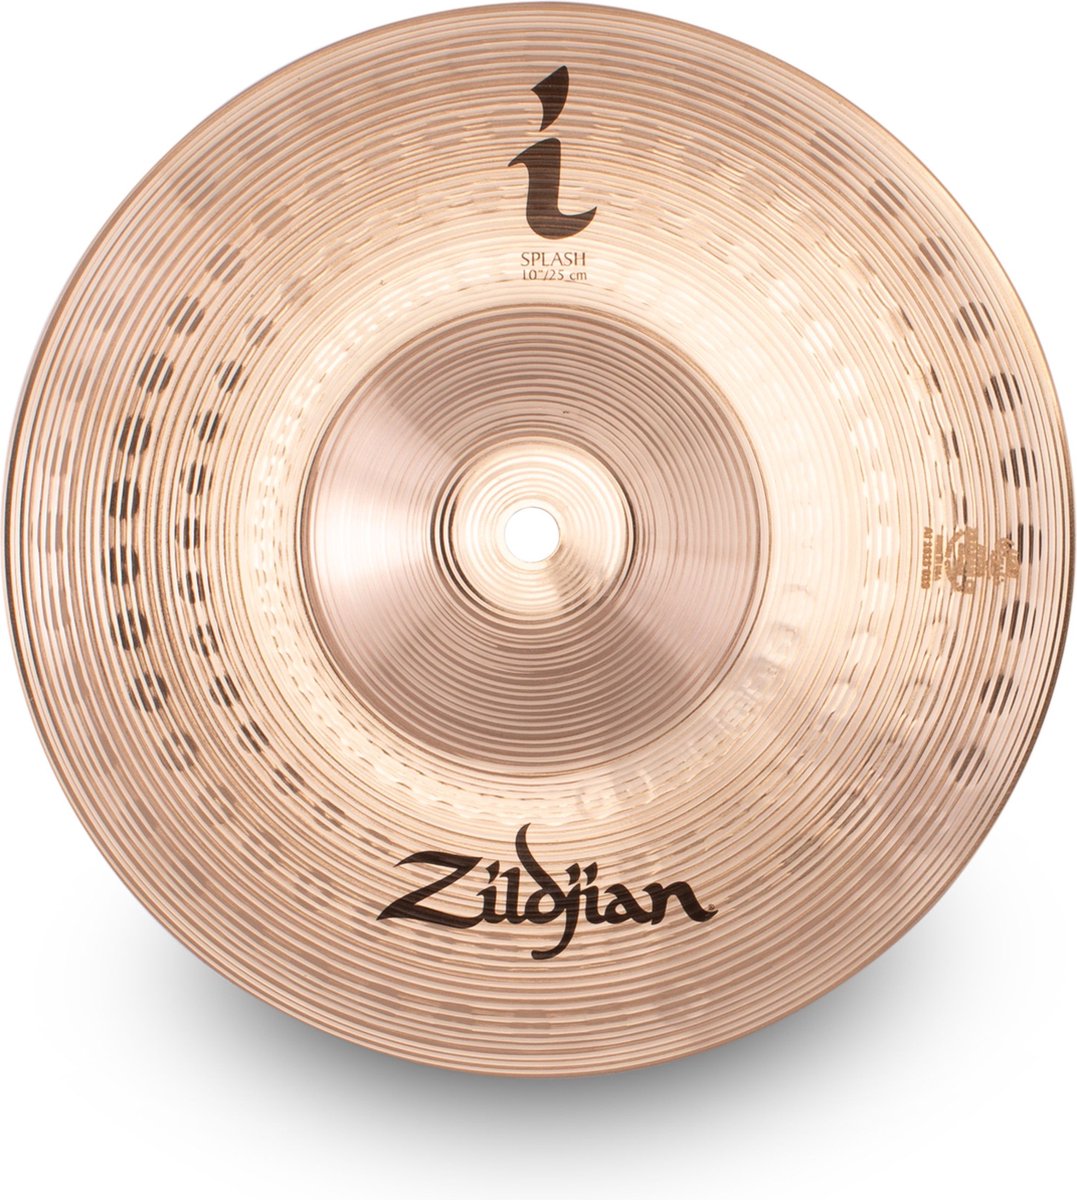 Zildjian ILH10S I Family Splash 10 inch